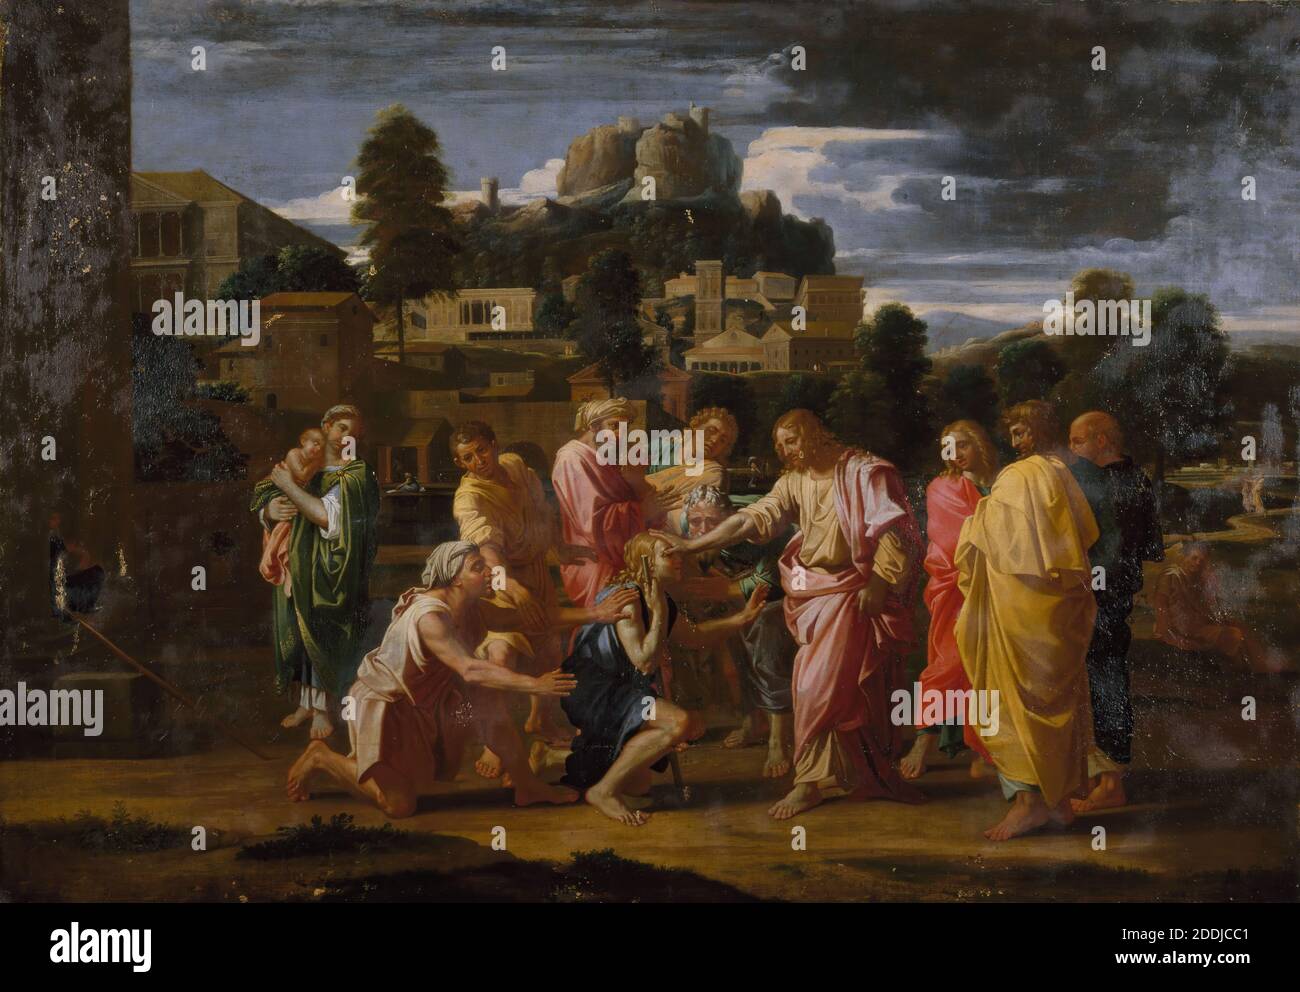 Les aveugles de Jéricho 1650-1700 par Nicolas Poussin, baroque, religion, chrétien, ancien maître, mouvement artistique, classicisme Banque D'Images